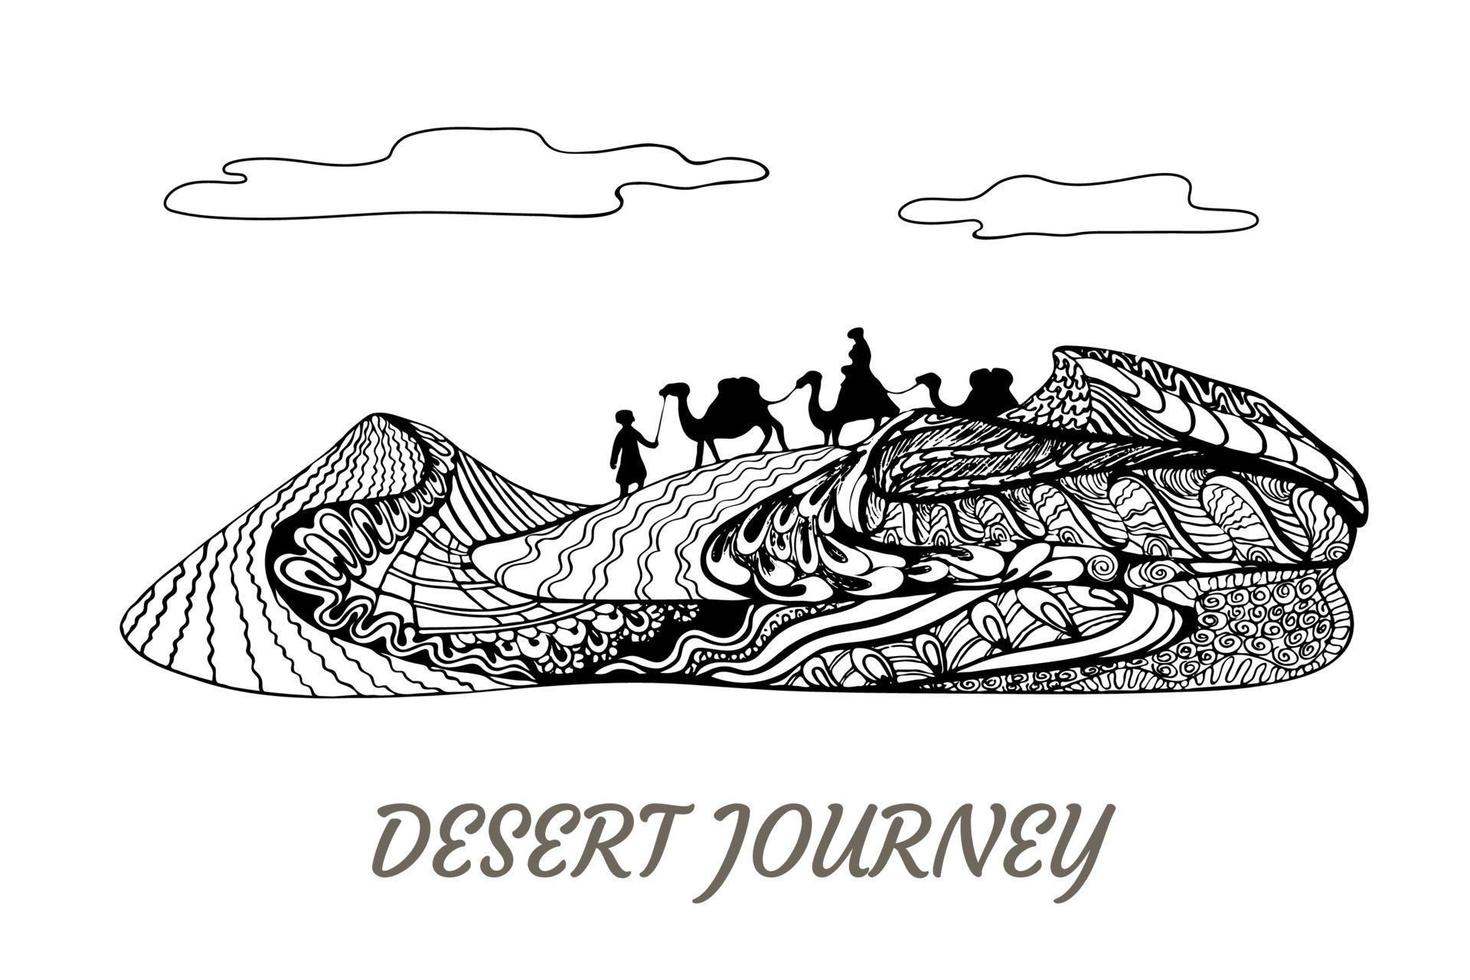 viagem no deserto, camelos e cameleiros caminhando na paisagem de dunas de areia. arte conceitual elegante e ornamentada do zentangle, design horizontal em preto e branco para impressões vetor